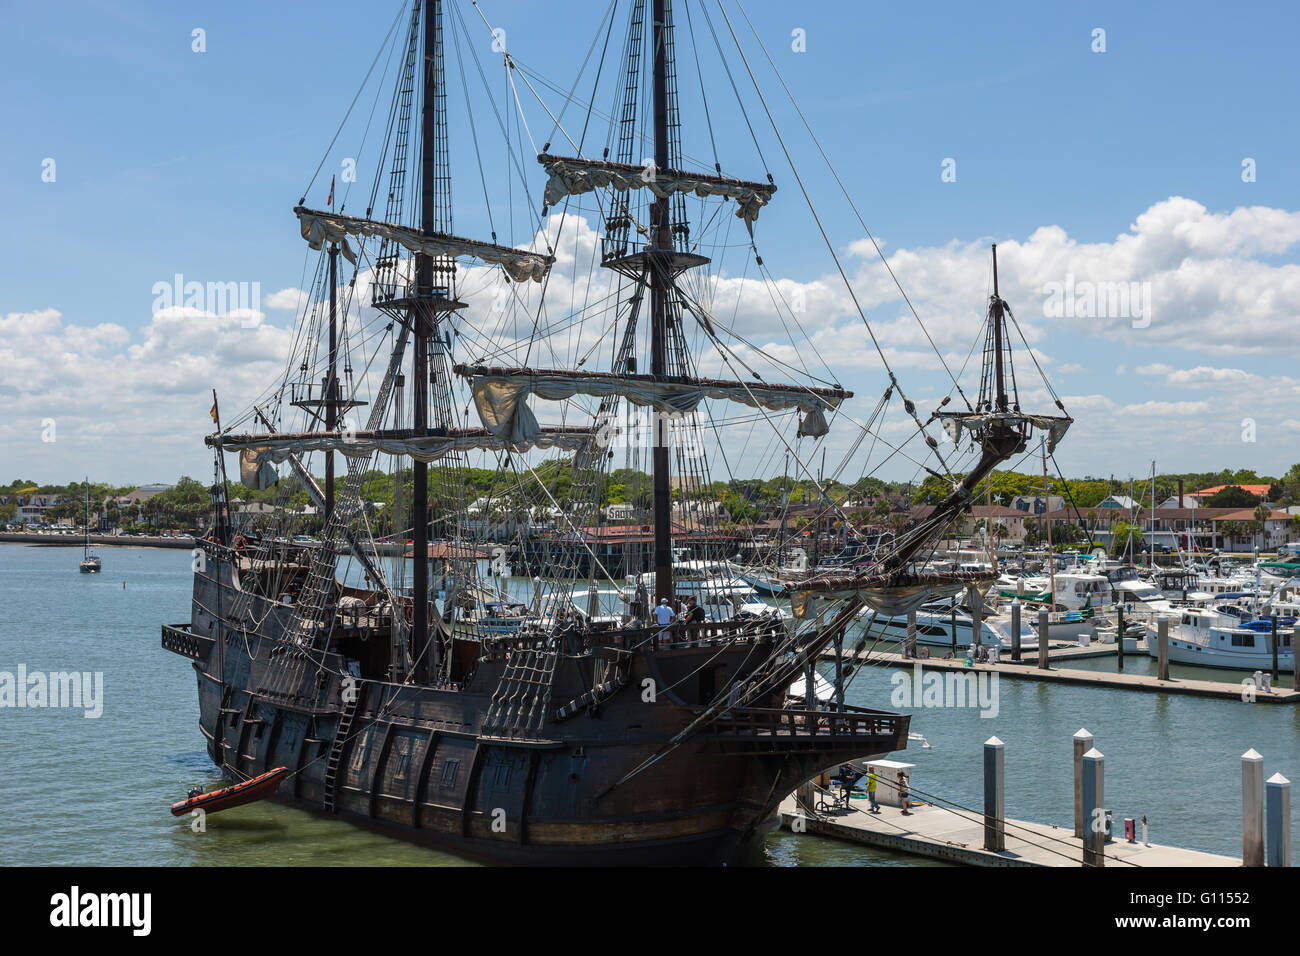 Ddie Schiff El Galeon angedockt in der Marina in St. Augustine, Florida. Die El Galeon ist ein Nachbau eines kolonialen Epoche der spanischen Galeone. Stockfoto